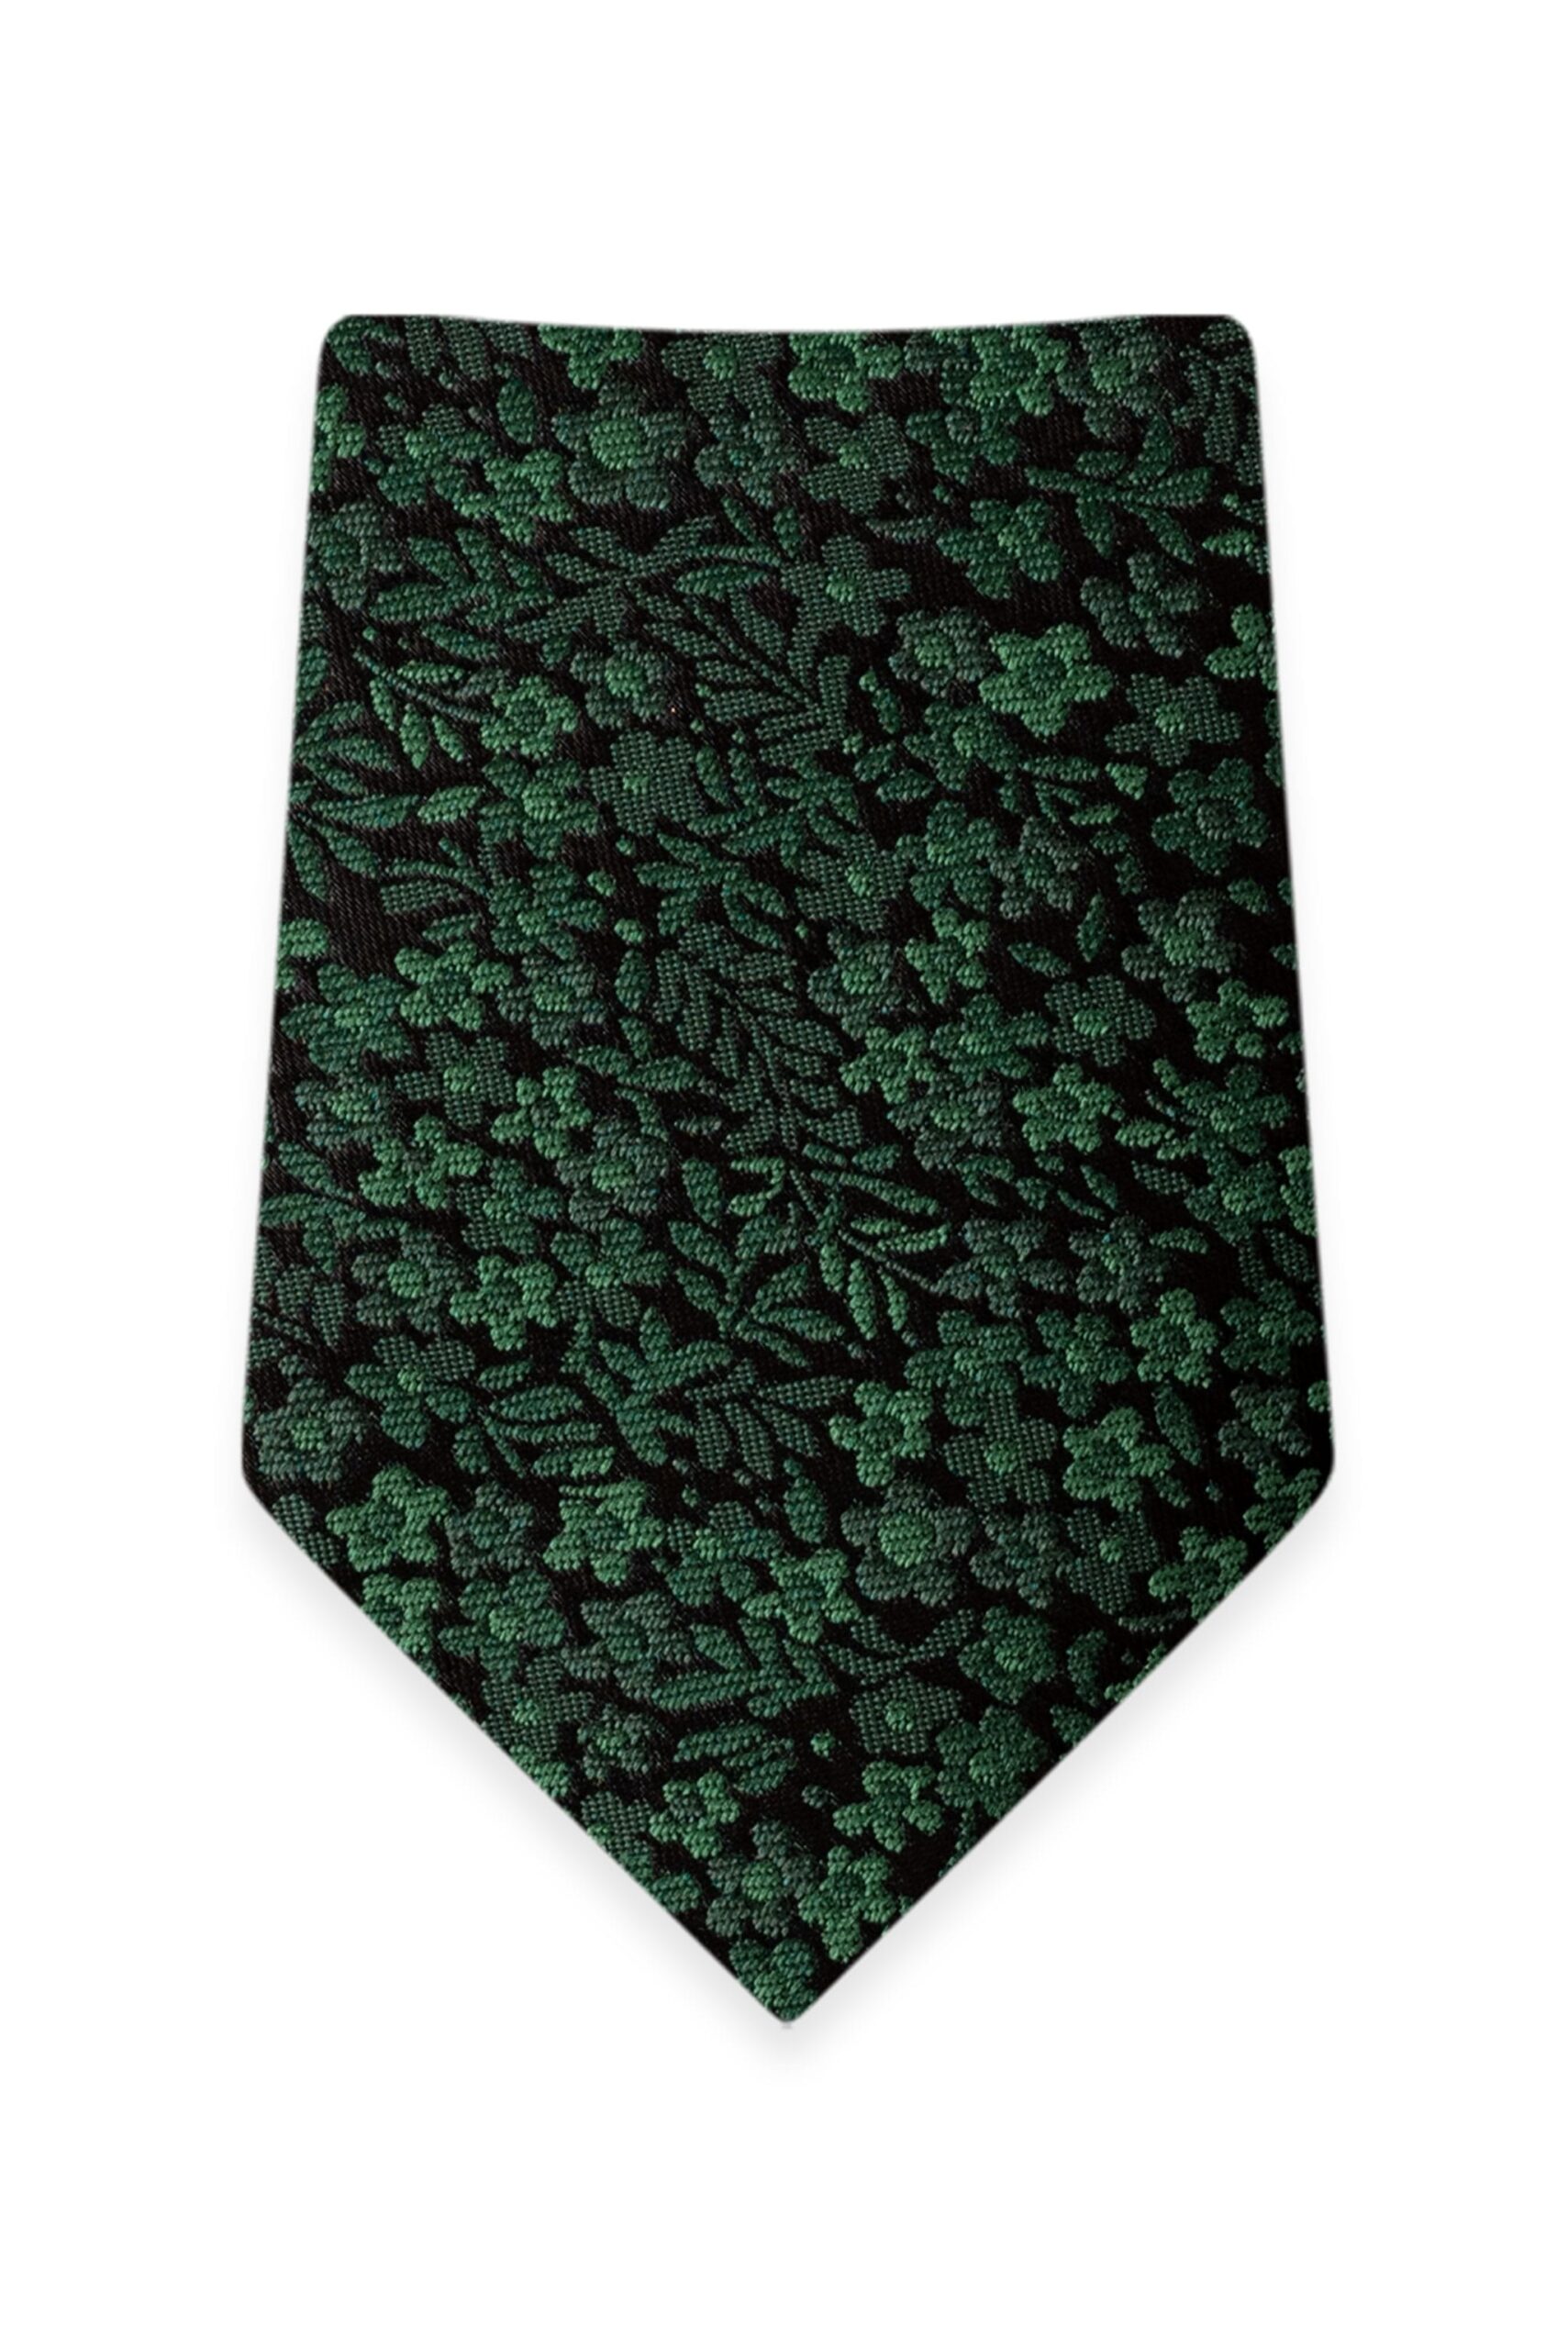 Floral Dark Green Self-Tie Windsor Tie 1